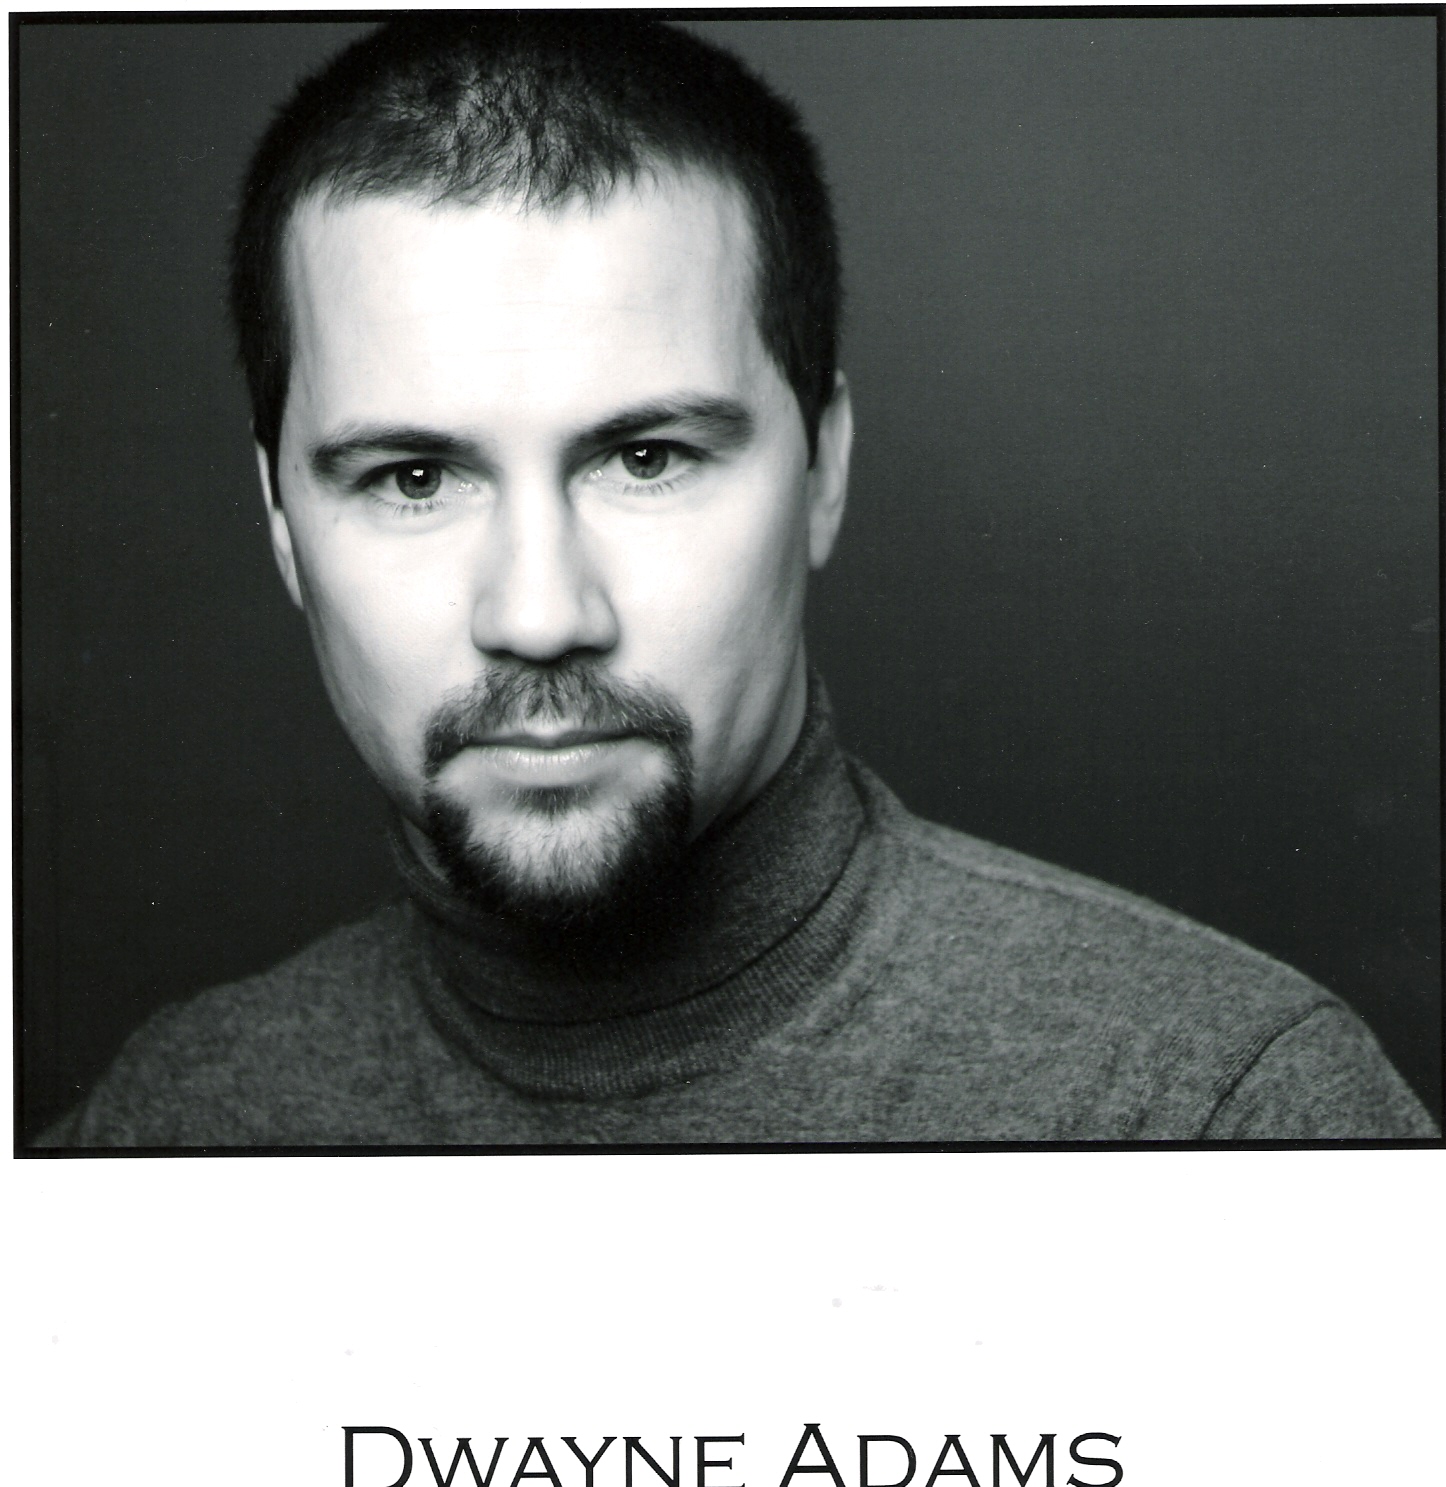 Dwayne Adams